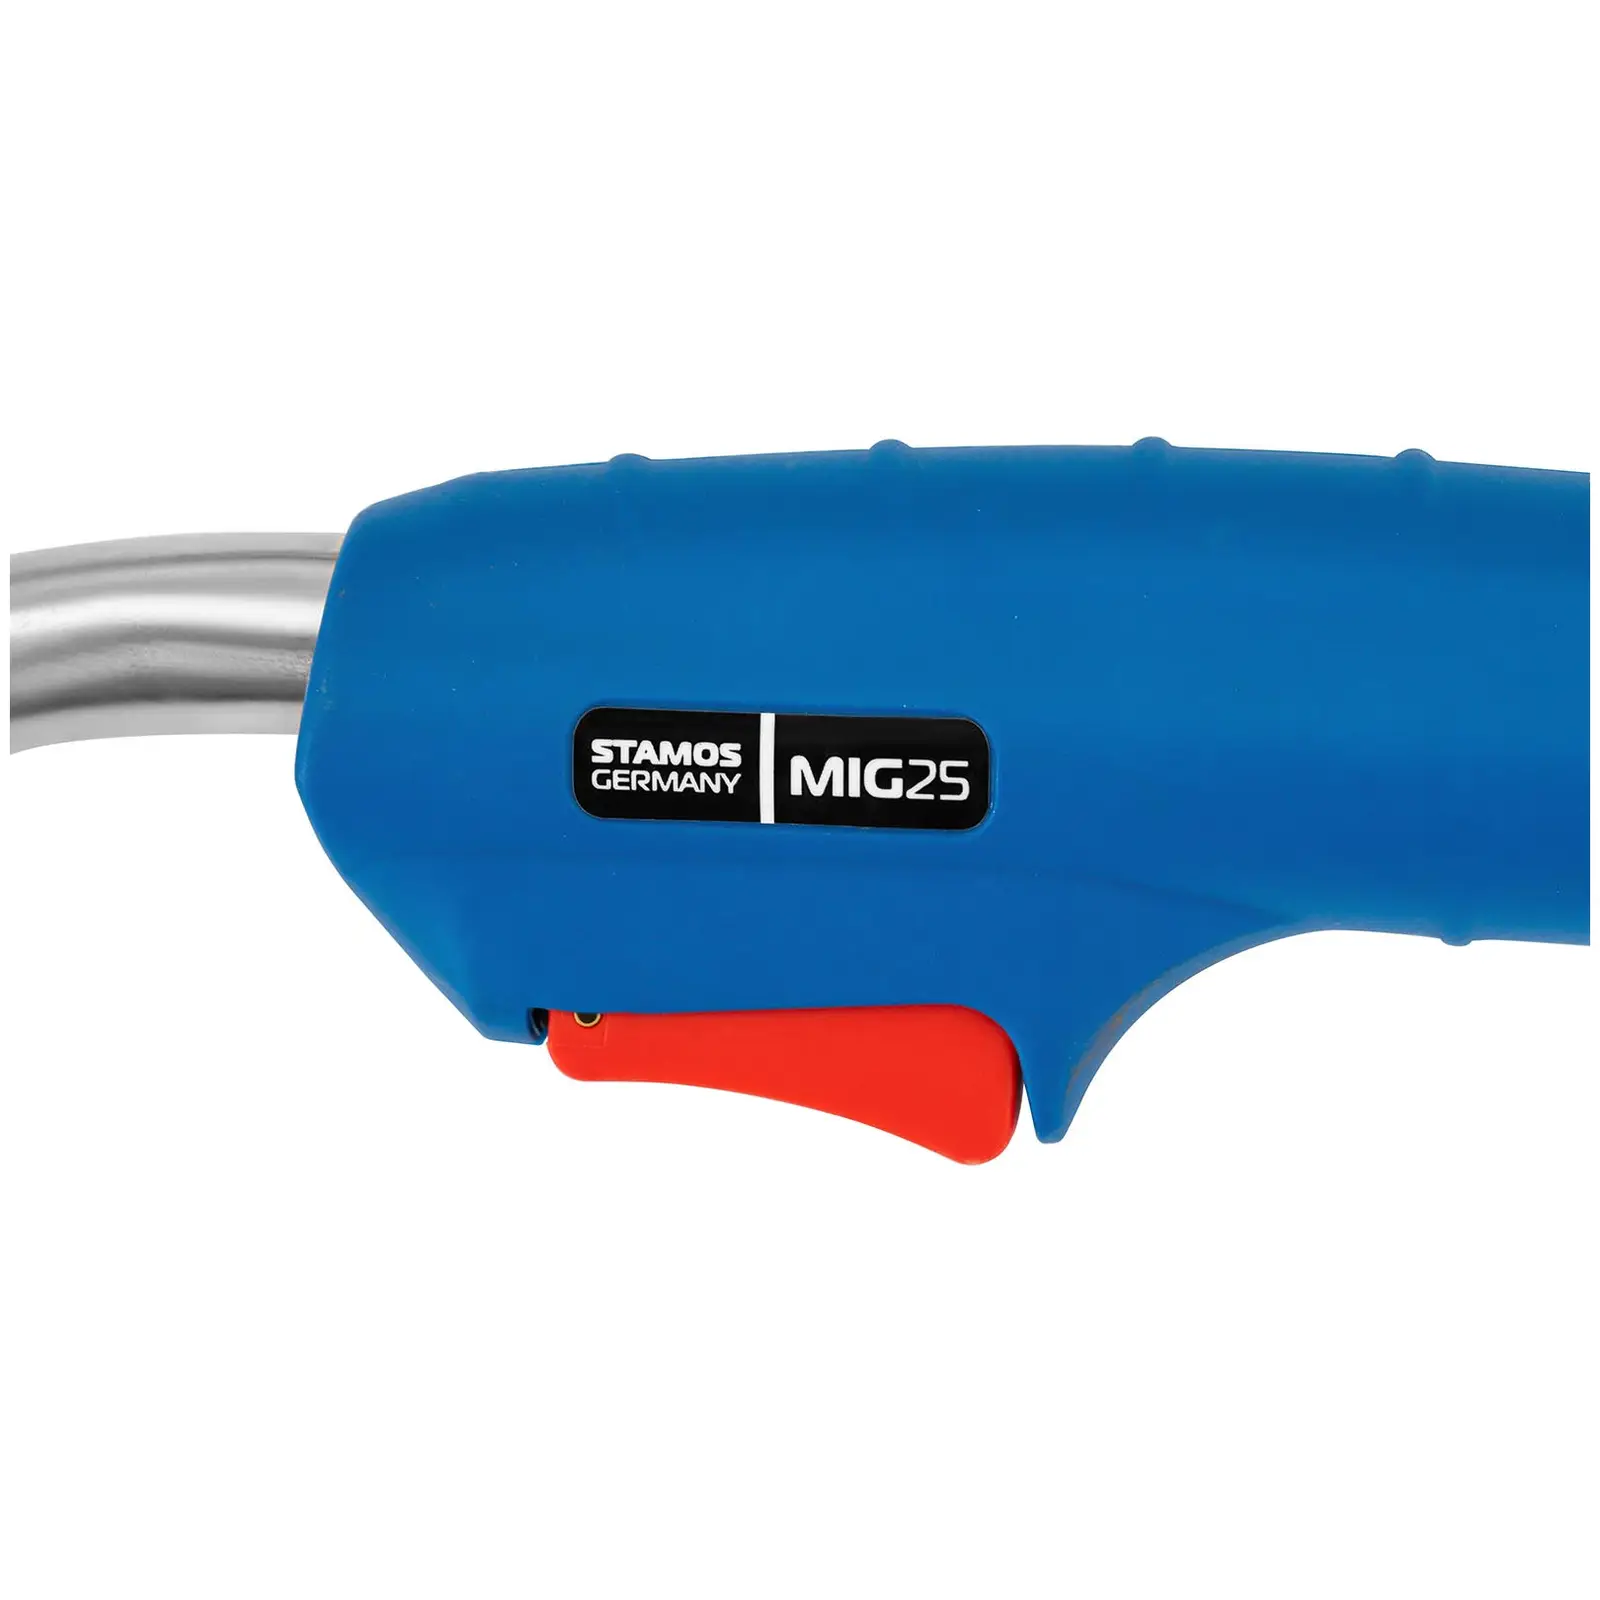 MIG MAG sveisebrenner - MIG25 - 4 mx 25 mm² - 230 A CO2 / 200 A mix